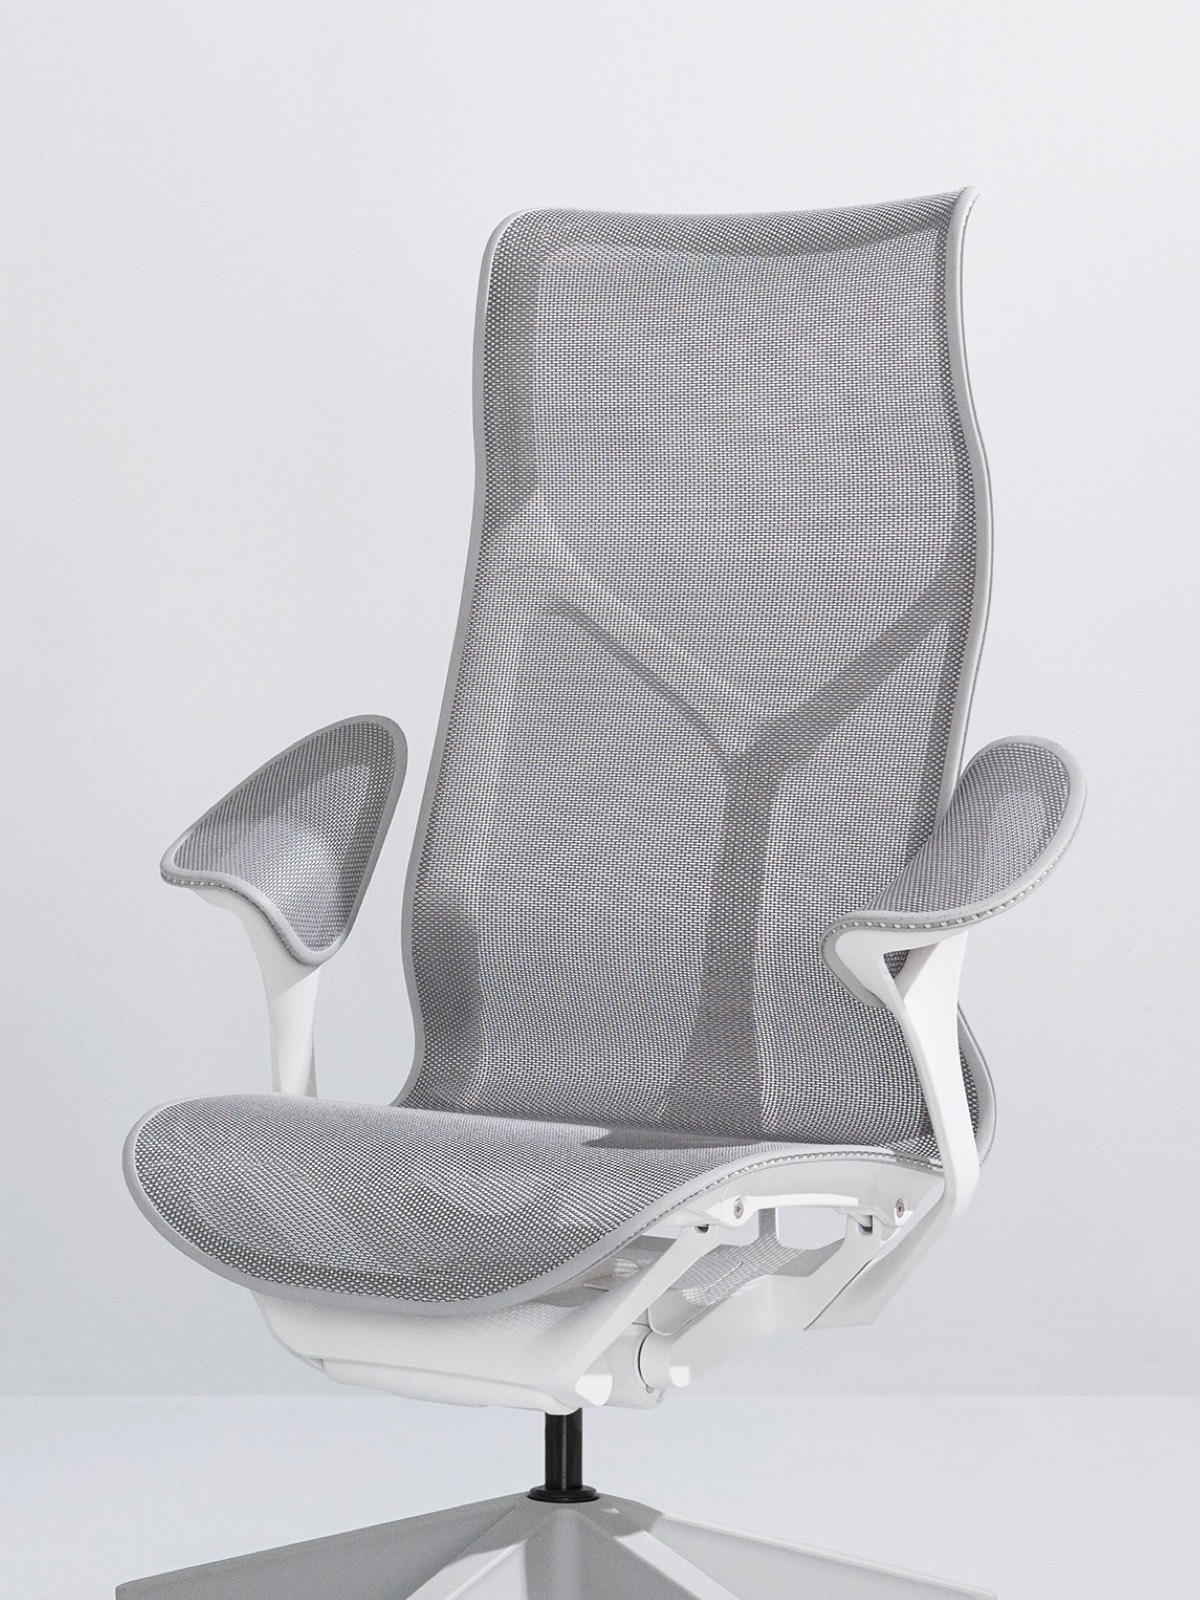 Ein Mineral grauer Stuhl Cosm des hohen Rückens mit einem weißen Rahmen und Blattarmen auf einem hellgrauen Hintergrund.